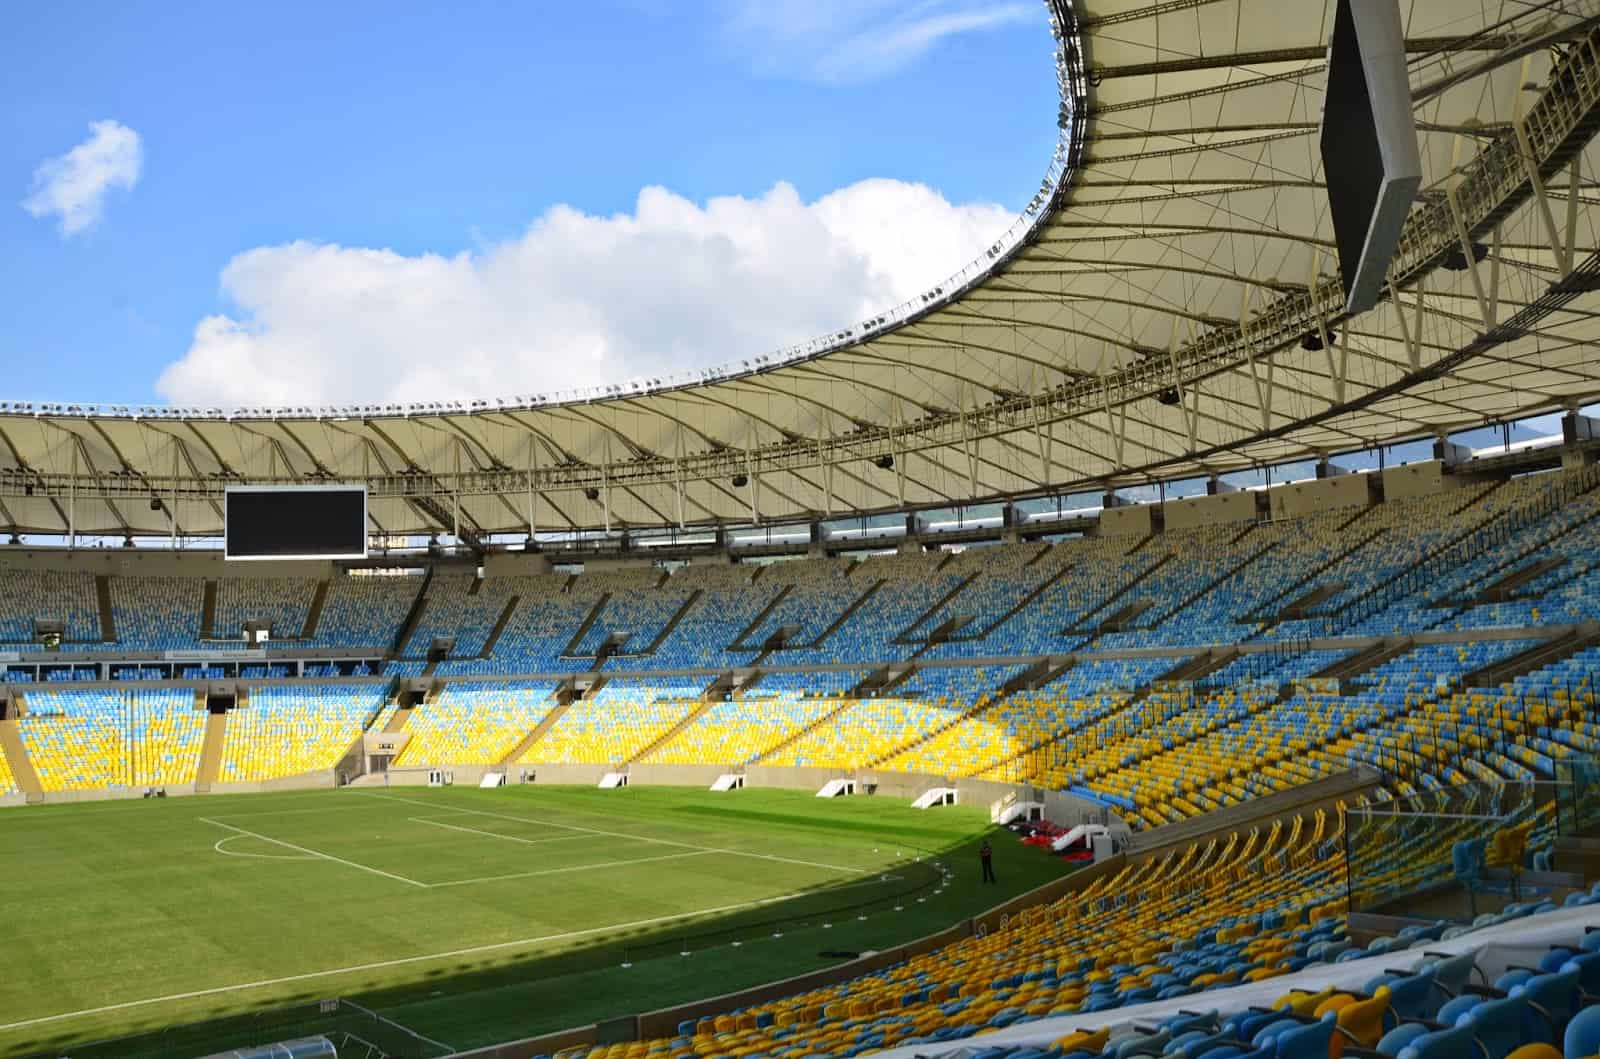 View from the VIP Level at Estádio do Maracanã in Rio de Janeiro, Brazil